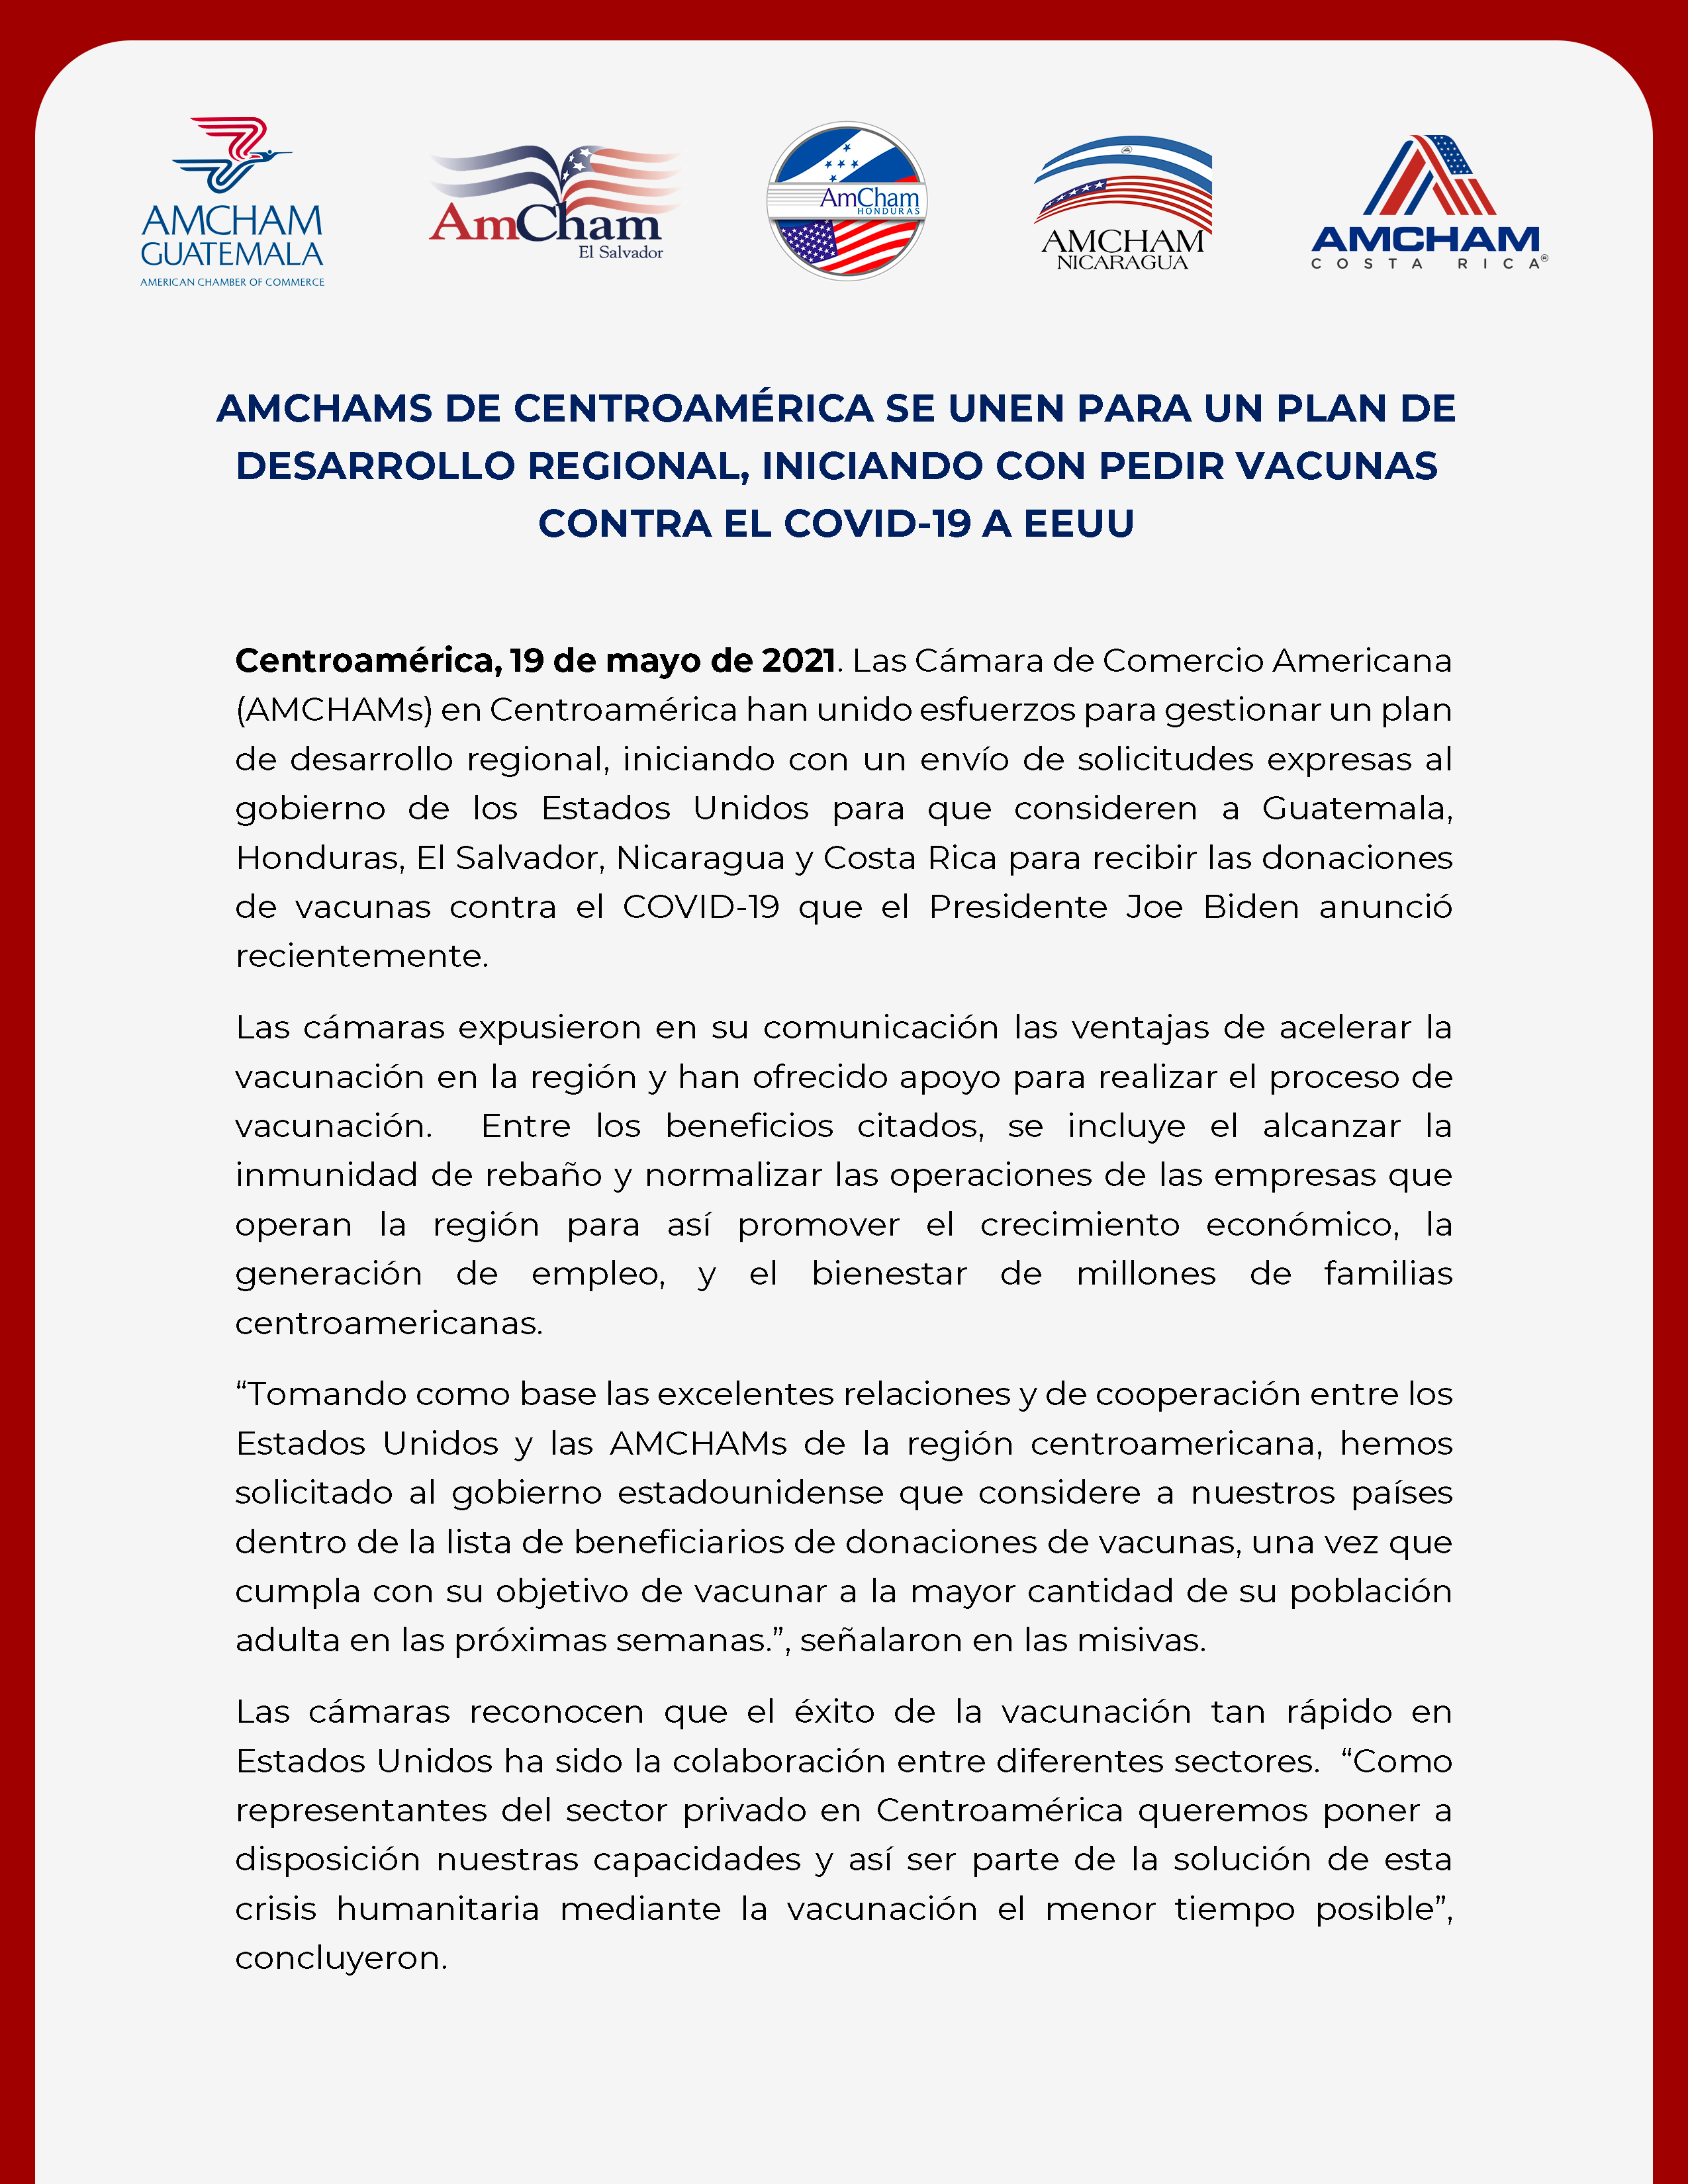 AmChams Centroamérica plan desarrollo